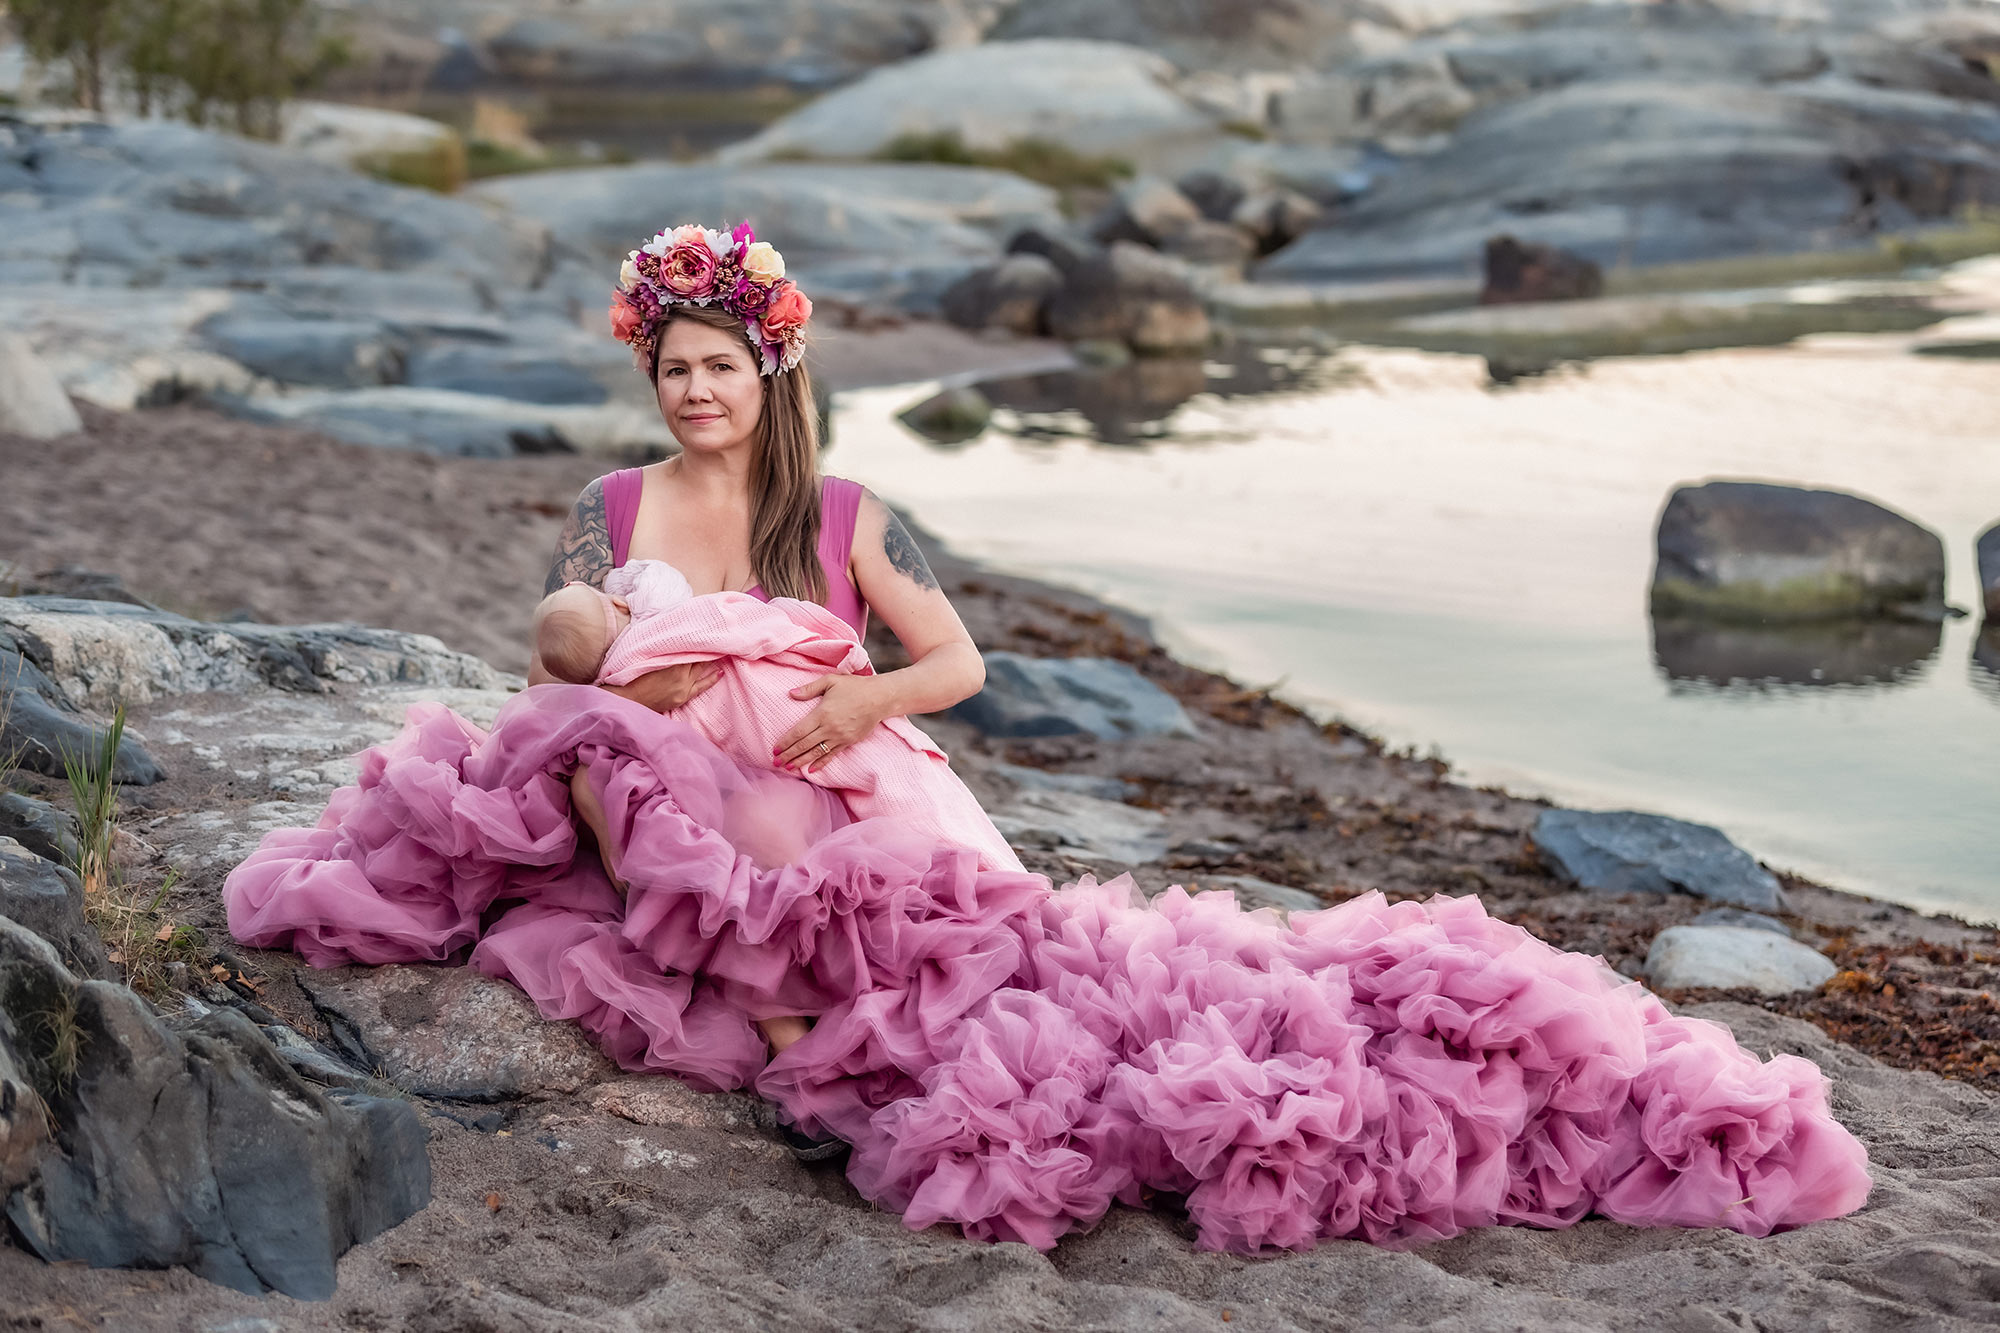 En mamma i rosa klänning sitter på stranden och ammar sitt lilla barn. I bakgrunden syns vatten och klippor.